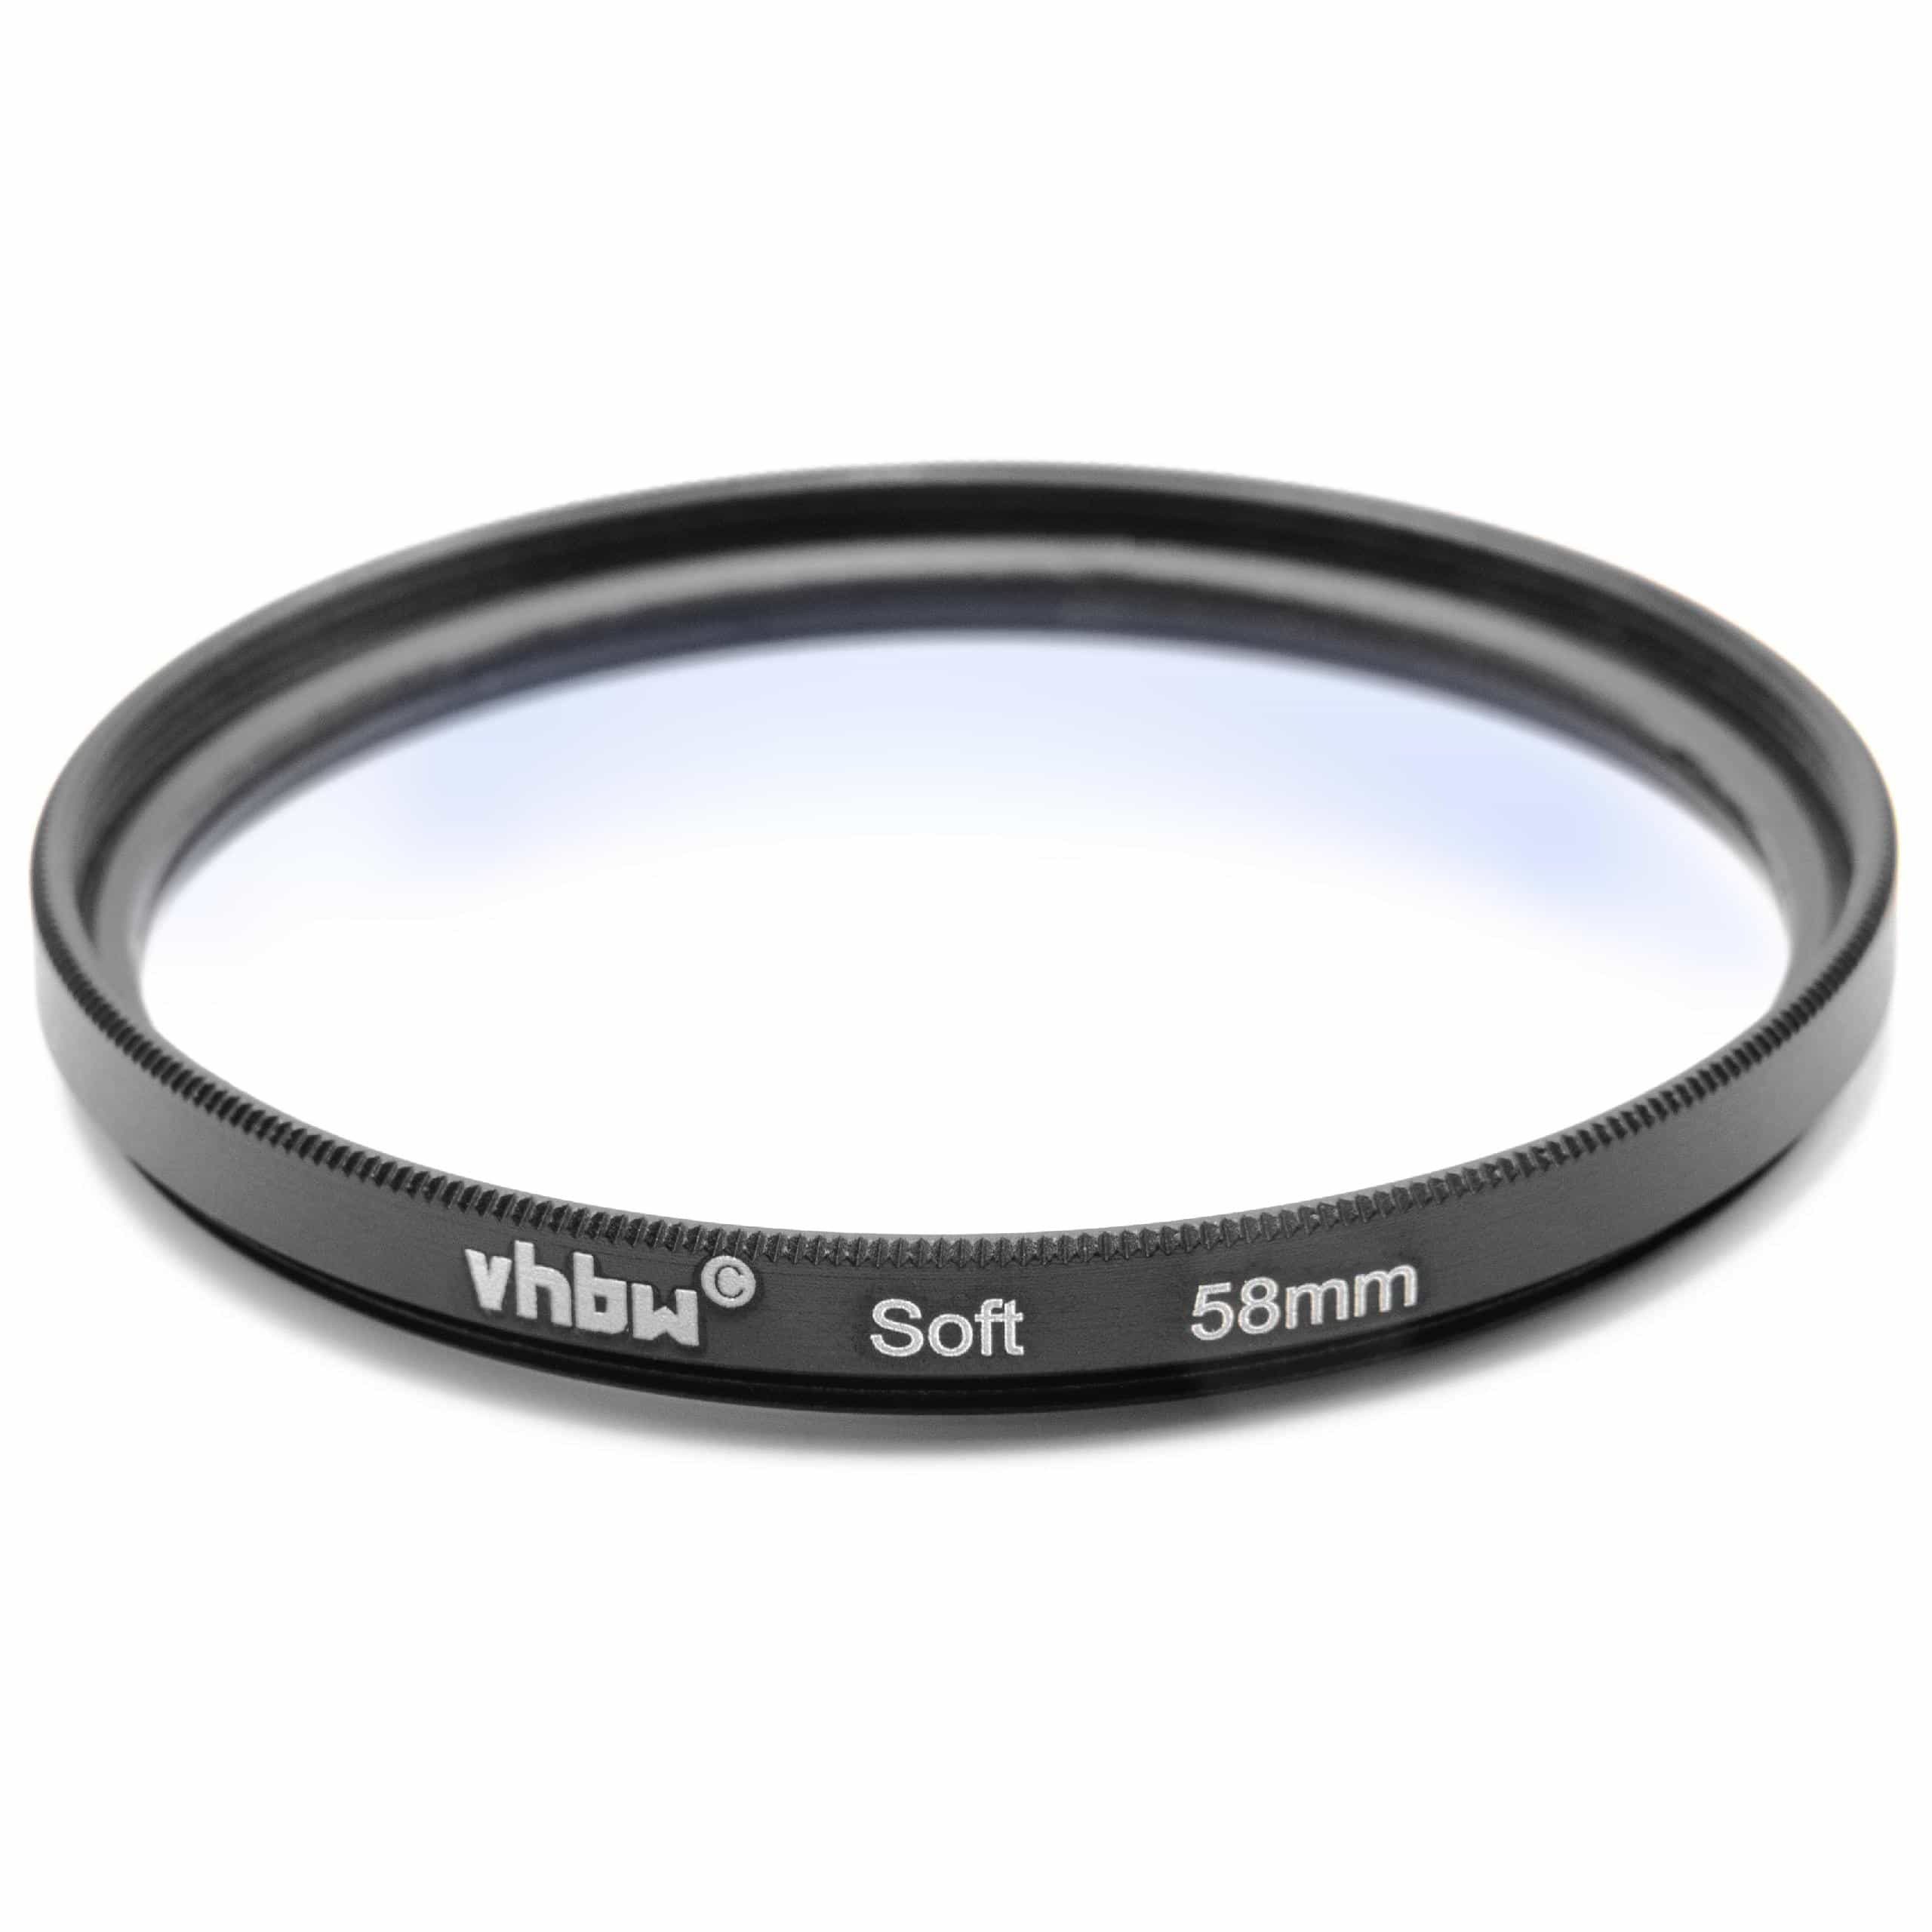 Weichzeichner Filter passend für Kameras & Objektive mit 58mm Filtergewinde - Softfilter